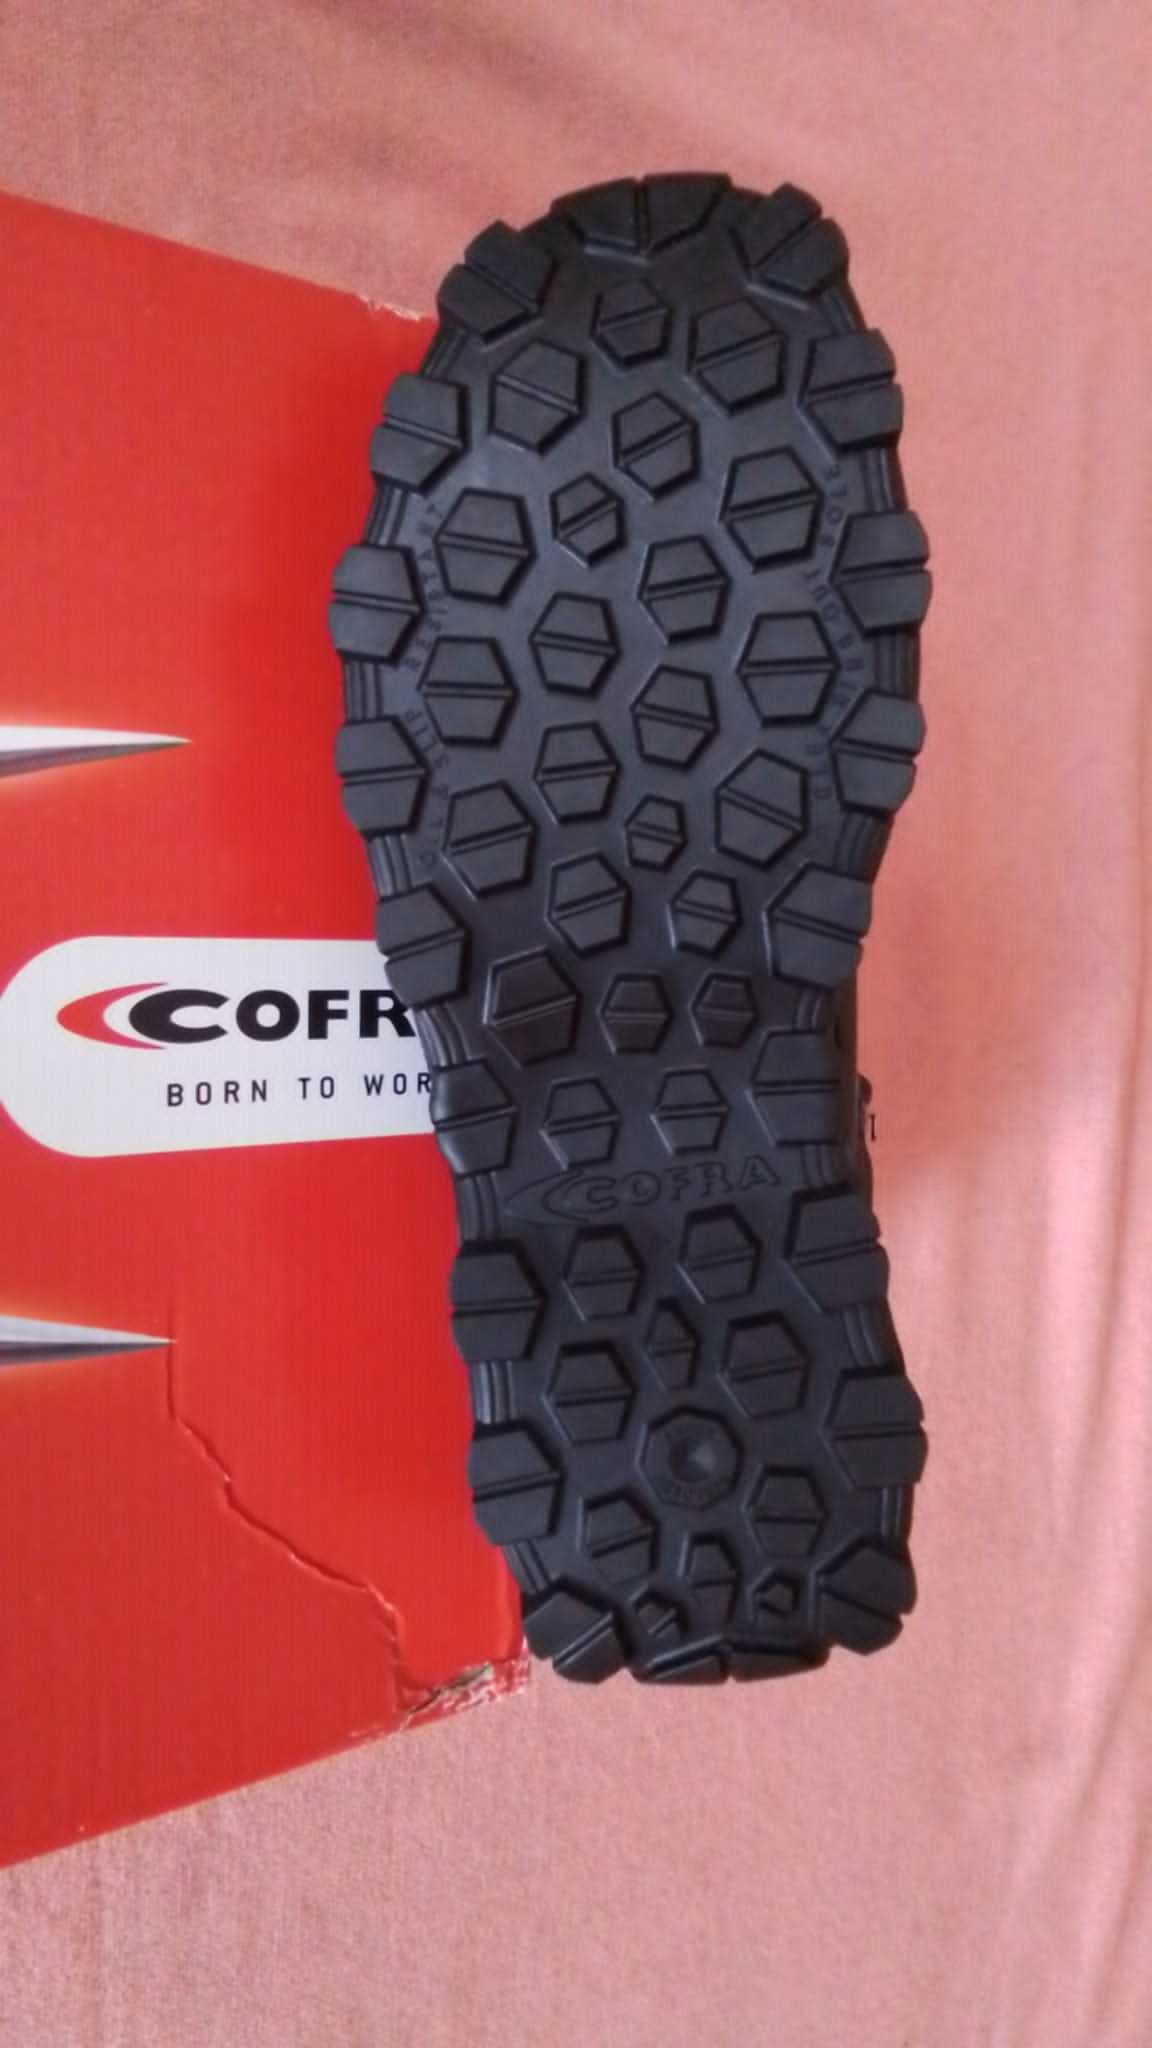 Nowe buty ocieplane Cofra NEW BARENTS S3 CI SRC rozm.43